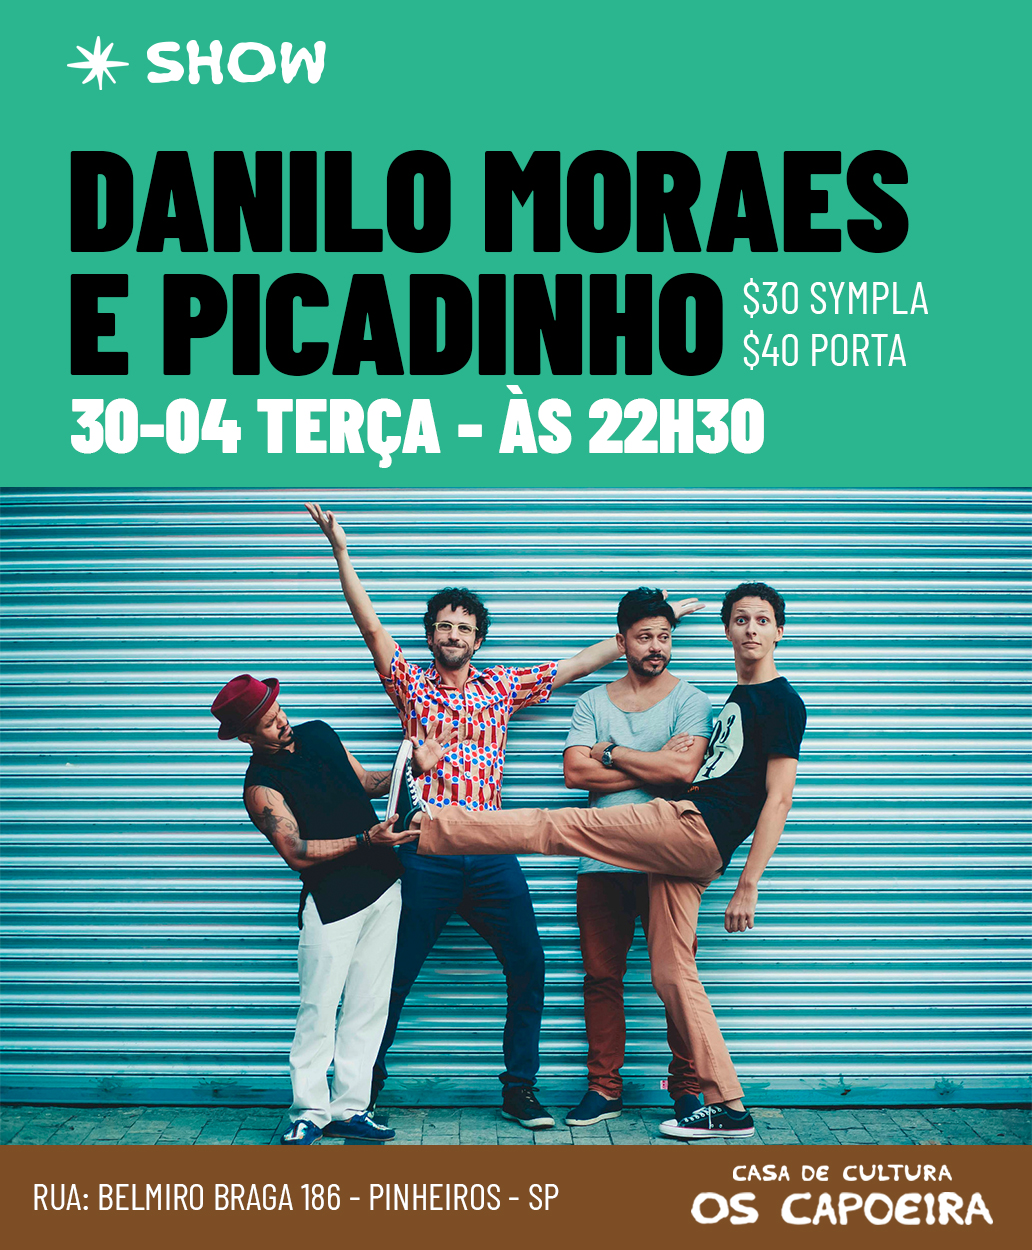 Danilo Moraes e Picadinho